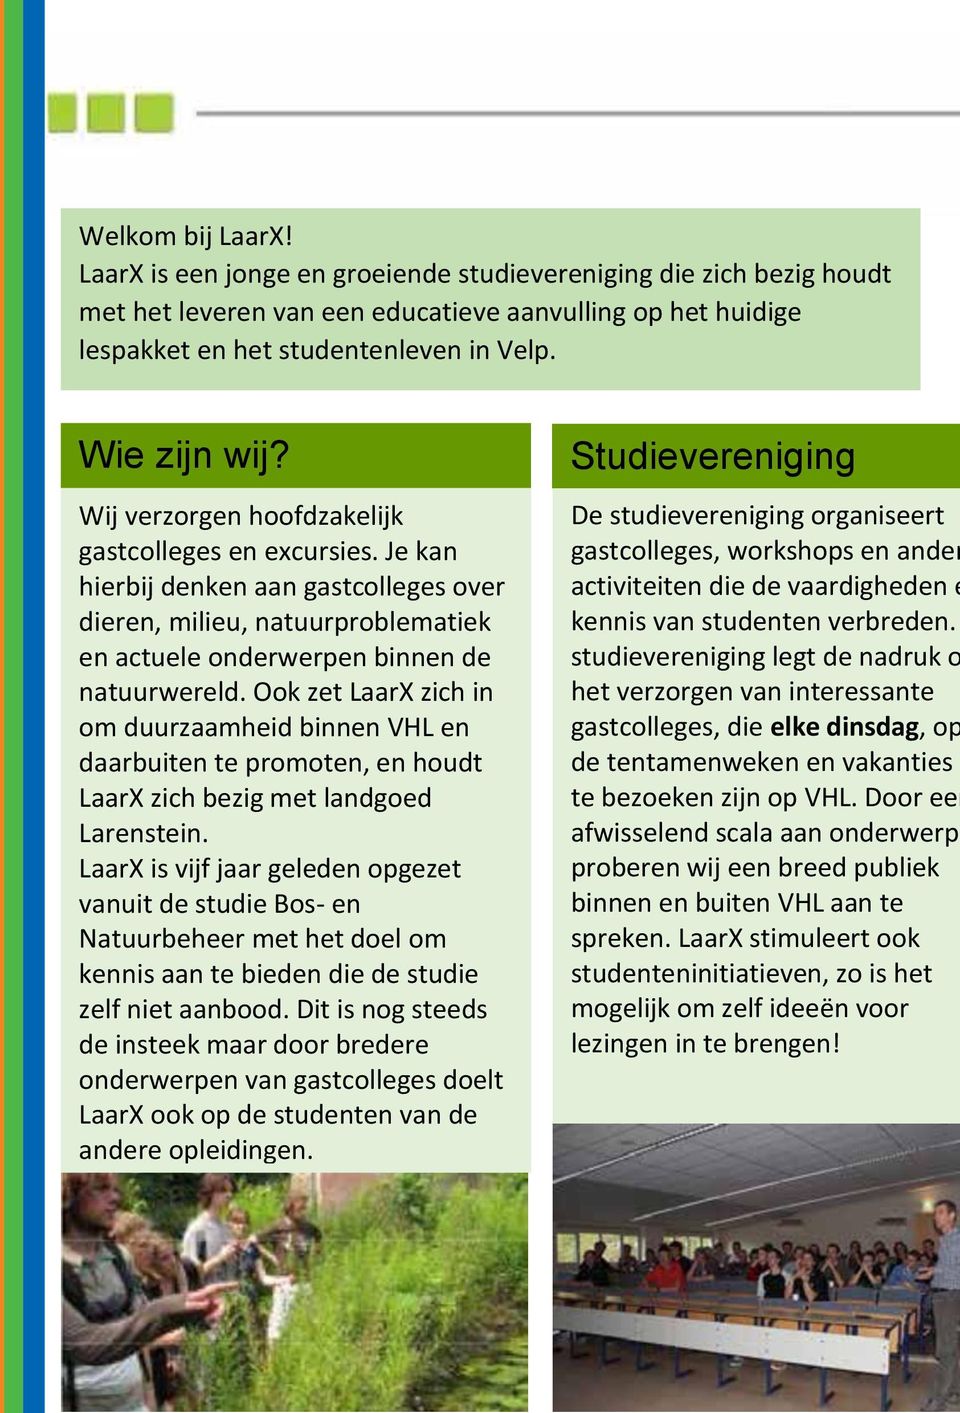 Ook zet LaarX zich in om duurzaamheid binnen VHL en daarbuiten te promoten, en houdt LaarX zich bezig met landgoed Larenstein.